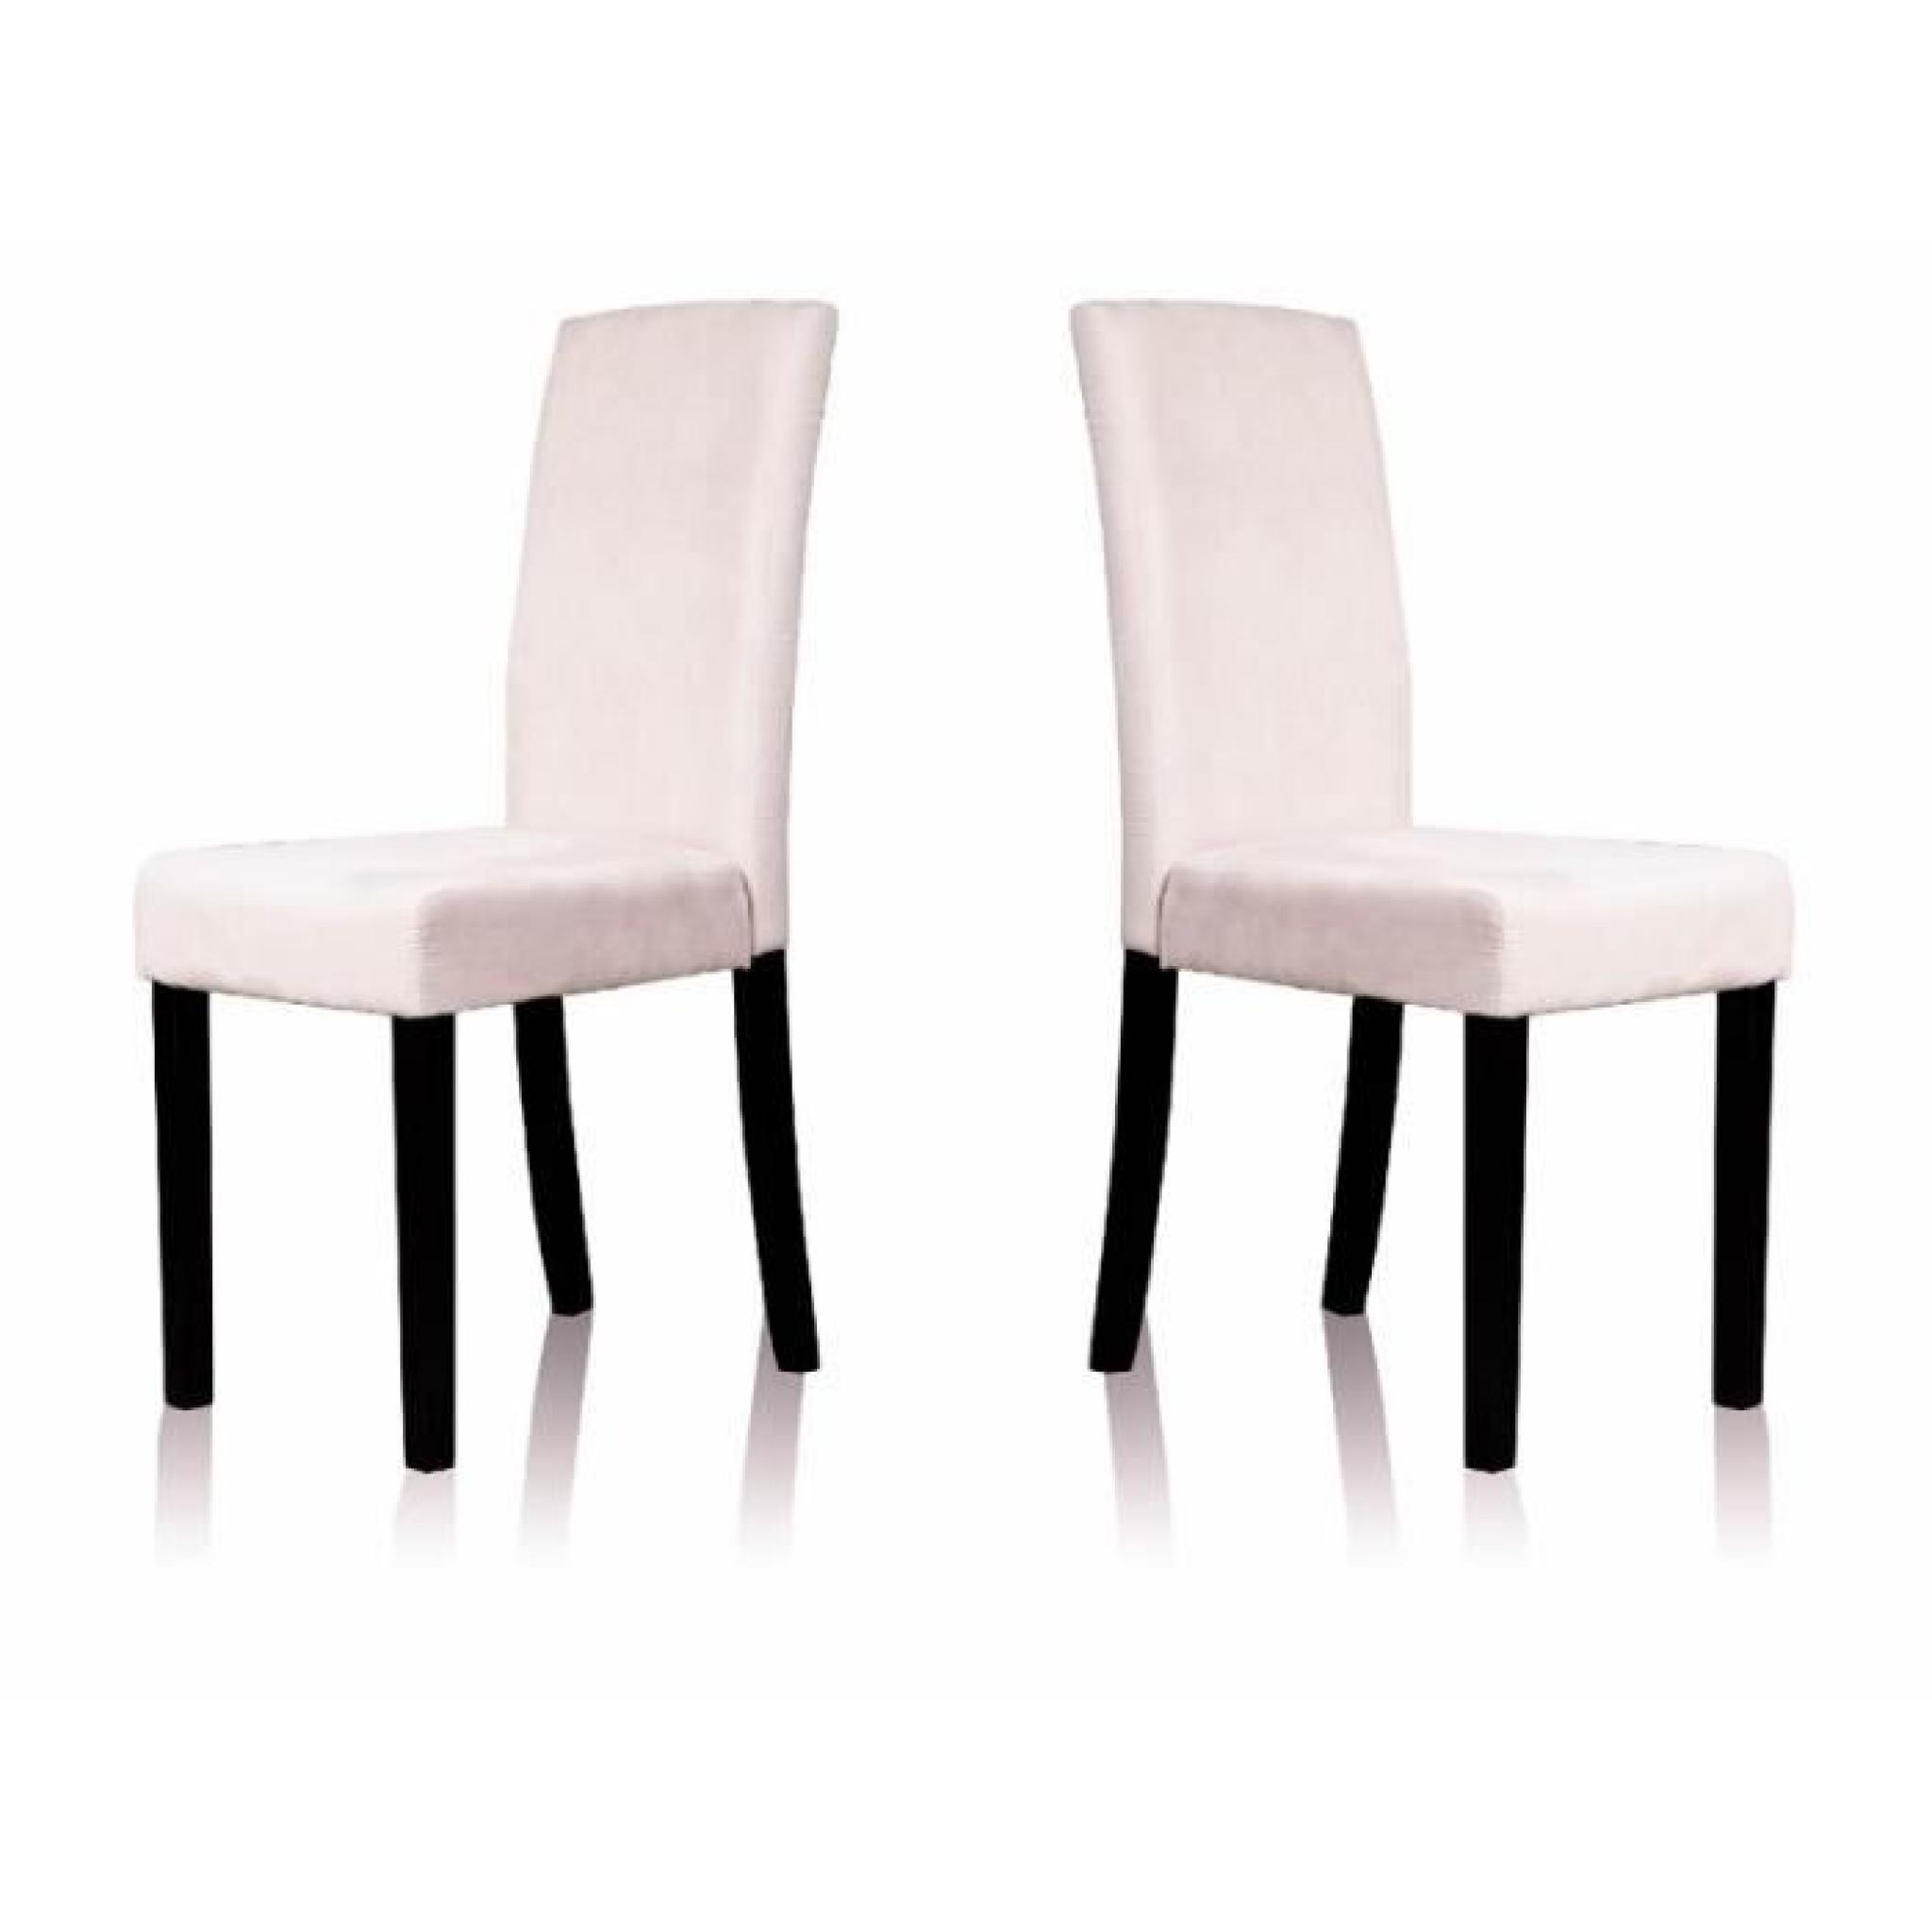 Lot de 2 chaises en tissu microfibre couleur beige. Chaises très élégantes et confortables apportant une touche très chic à votre...